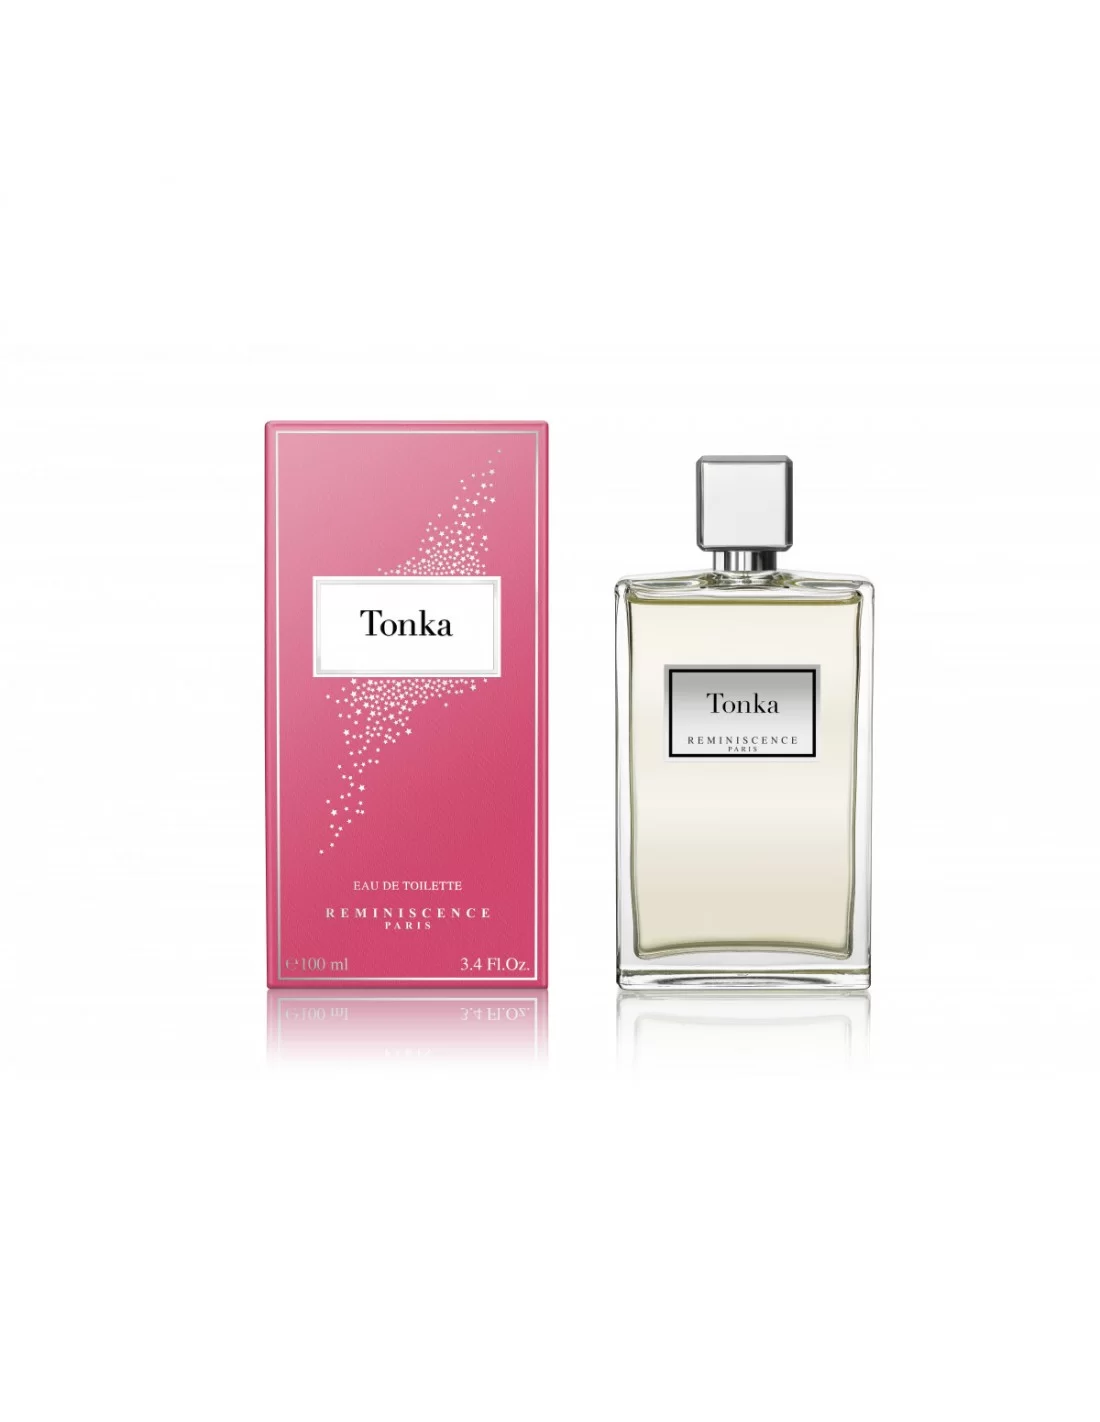 Tonka perfume